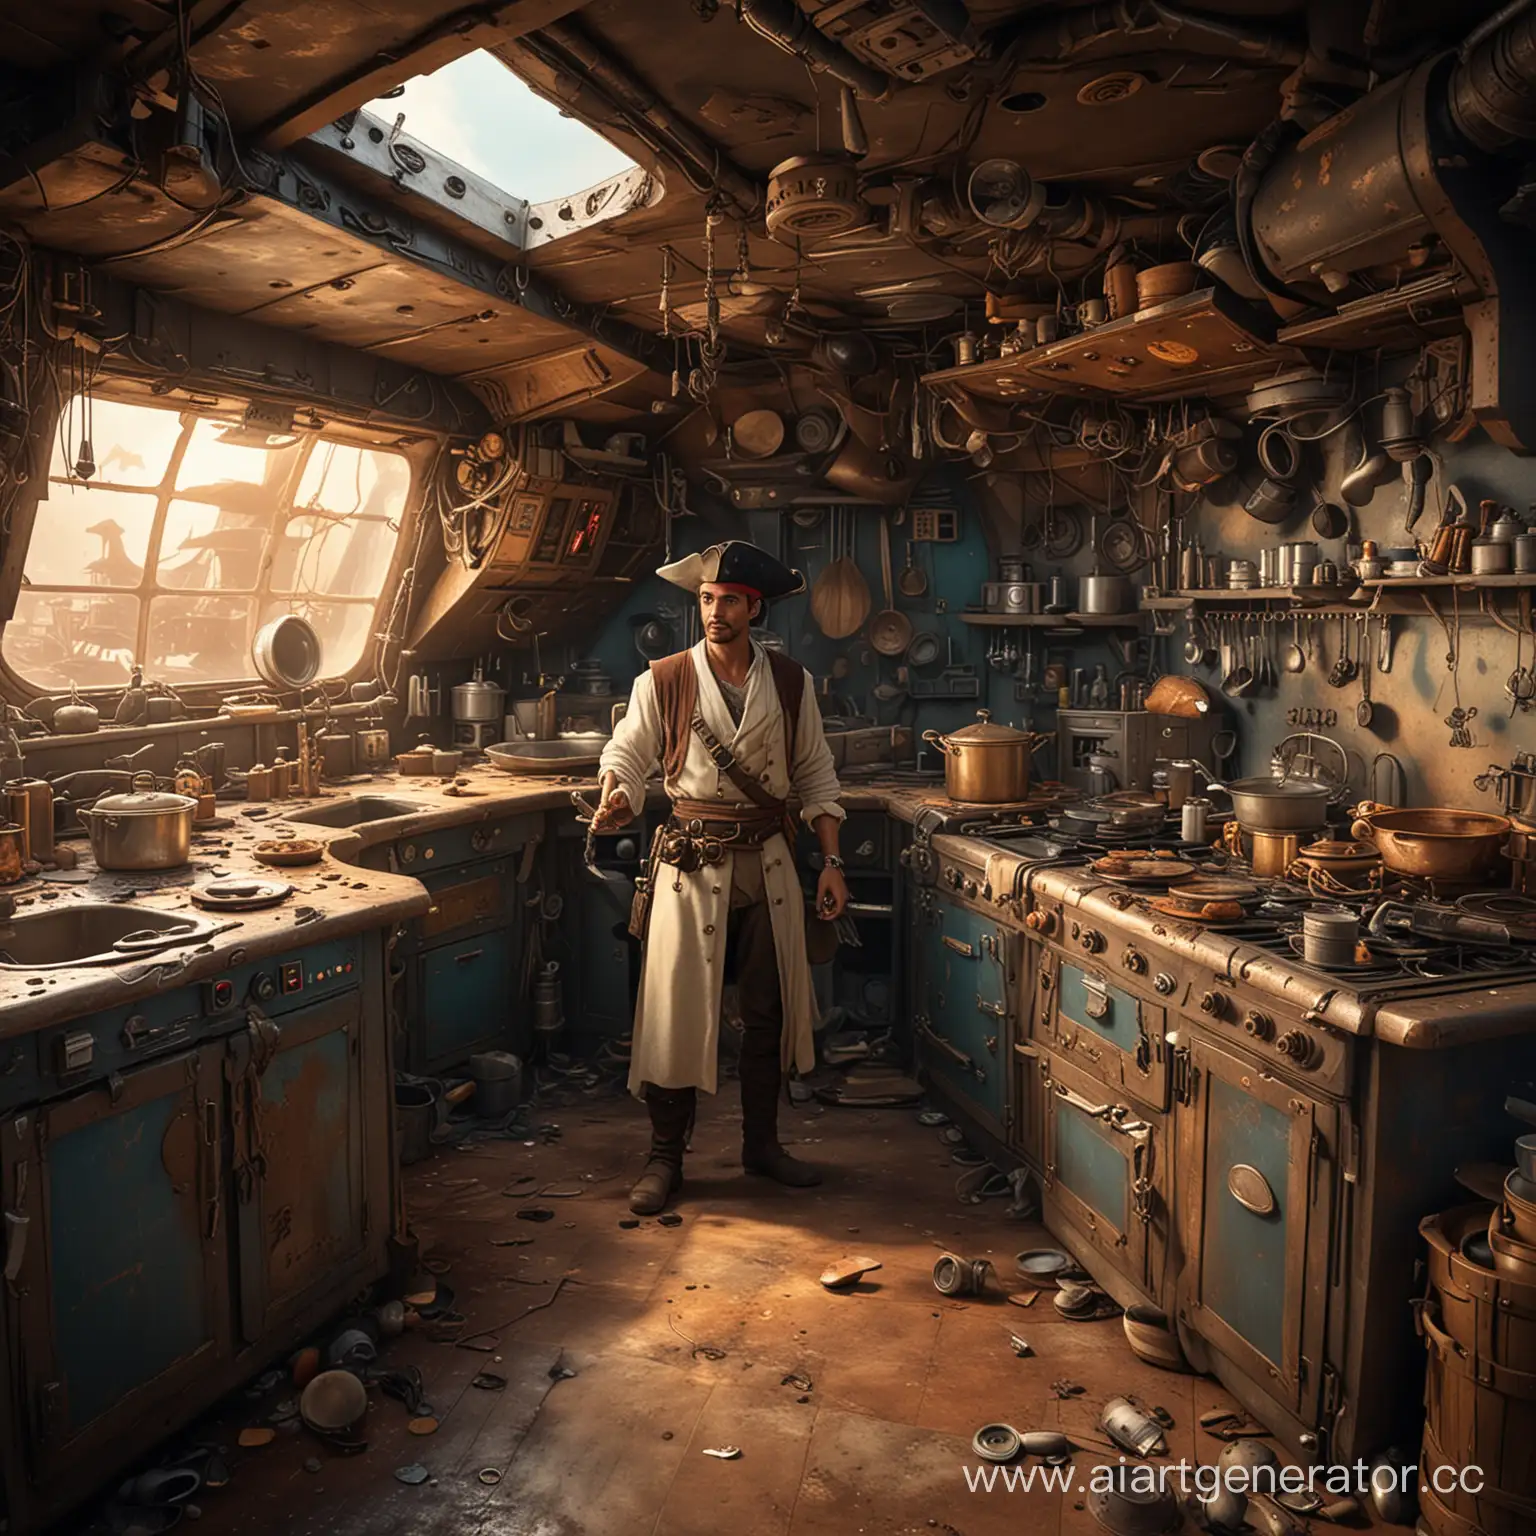 технологичная но грязная кухня со сломанным гарнитуром на пиратском космическом корабле с коком с протезом на левой руке, как в мультфильме планета сокровищ